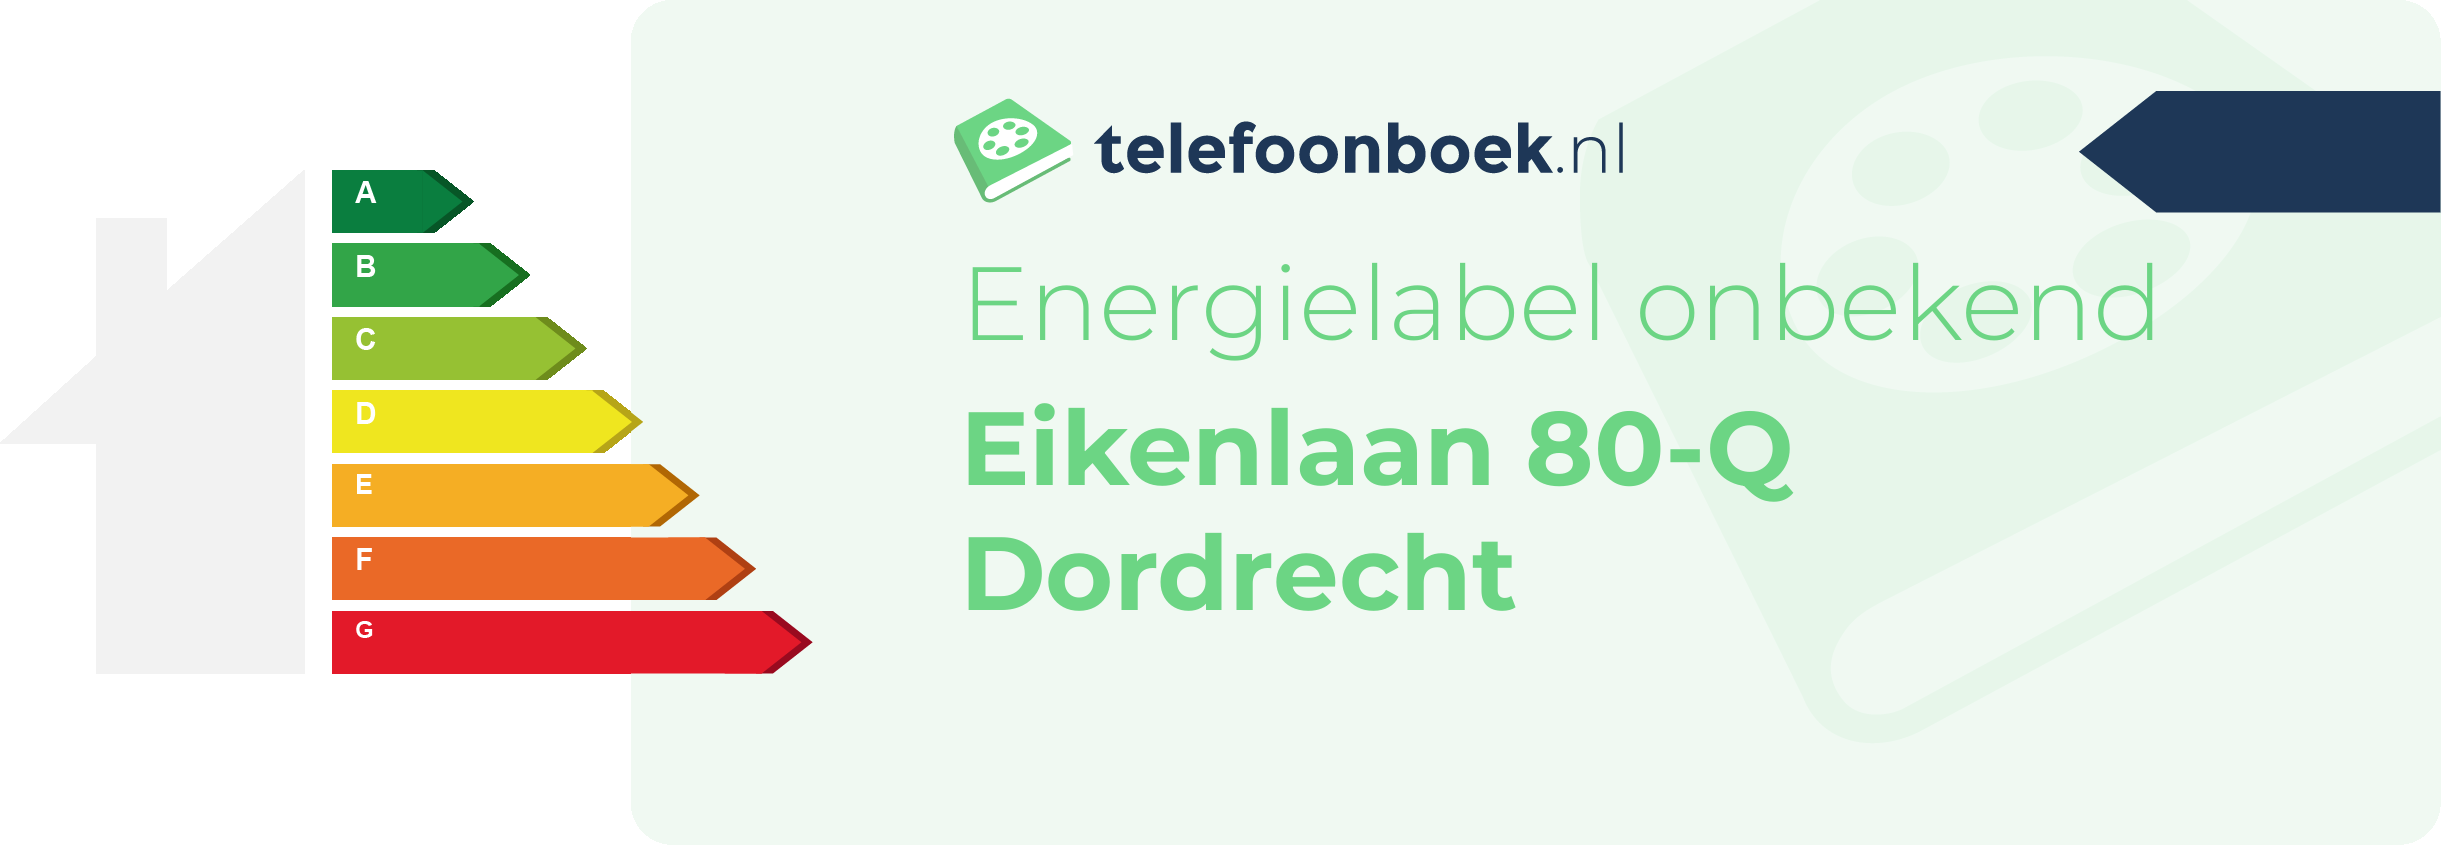 Energielabel Eikenlaan 80-Q Dordrecht